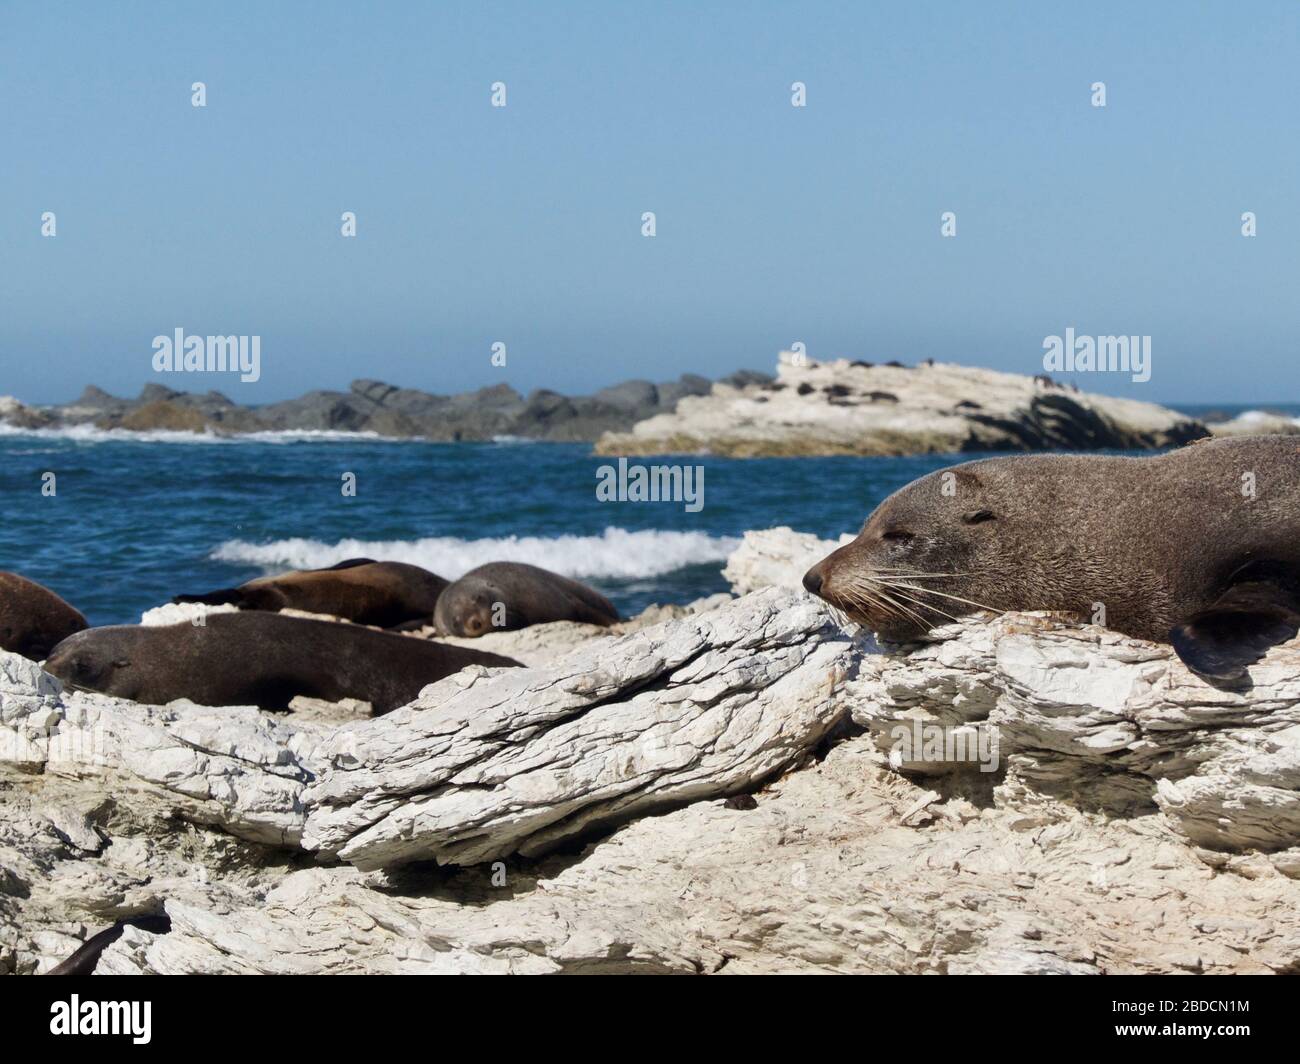 Gruppo di foche (Arctocephalus forsteri) che dormono e riposano sulla Penisola di Kaikoura nella colonia di foche in Nuova Zelanda Foto Stock